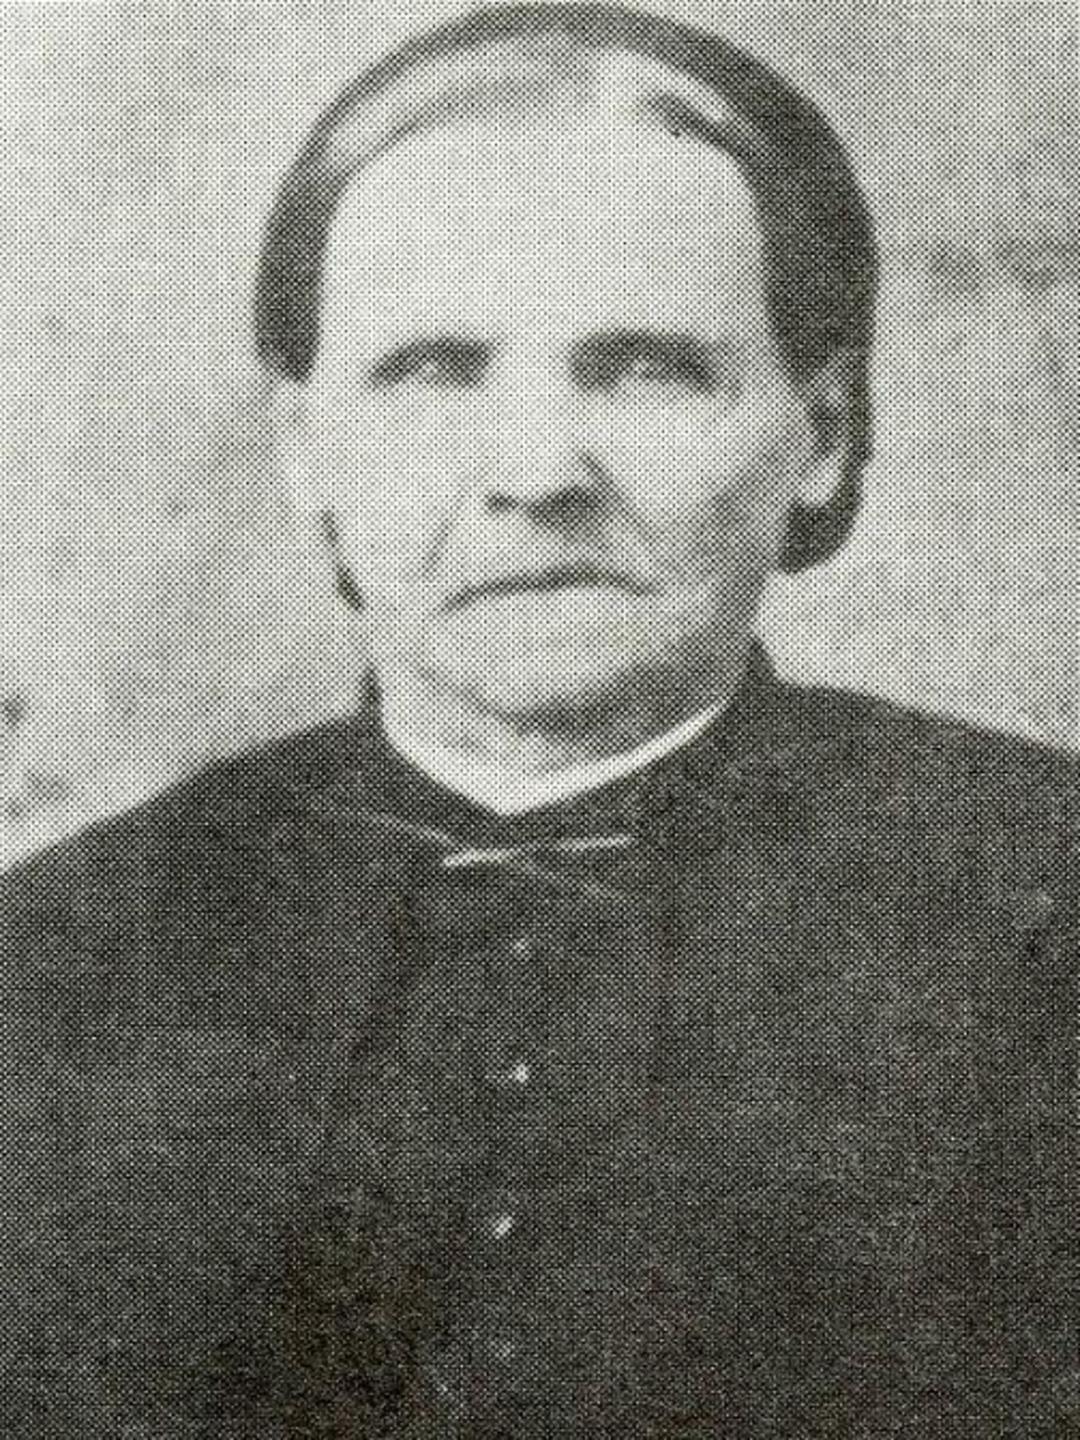 Ellen McKay (1830 - 1890) Profile